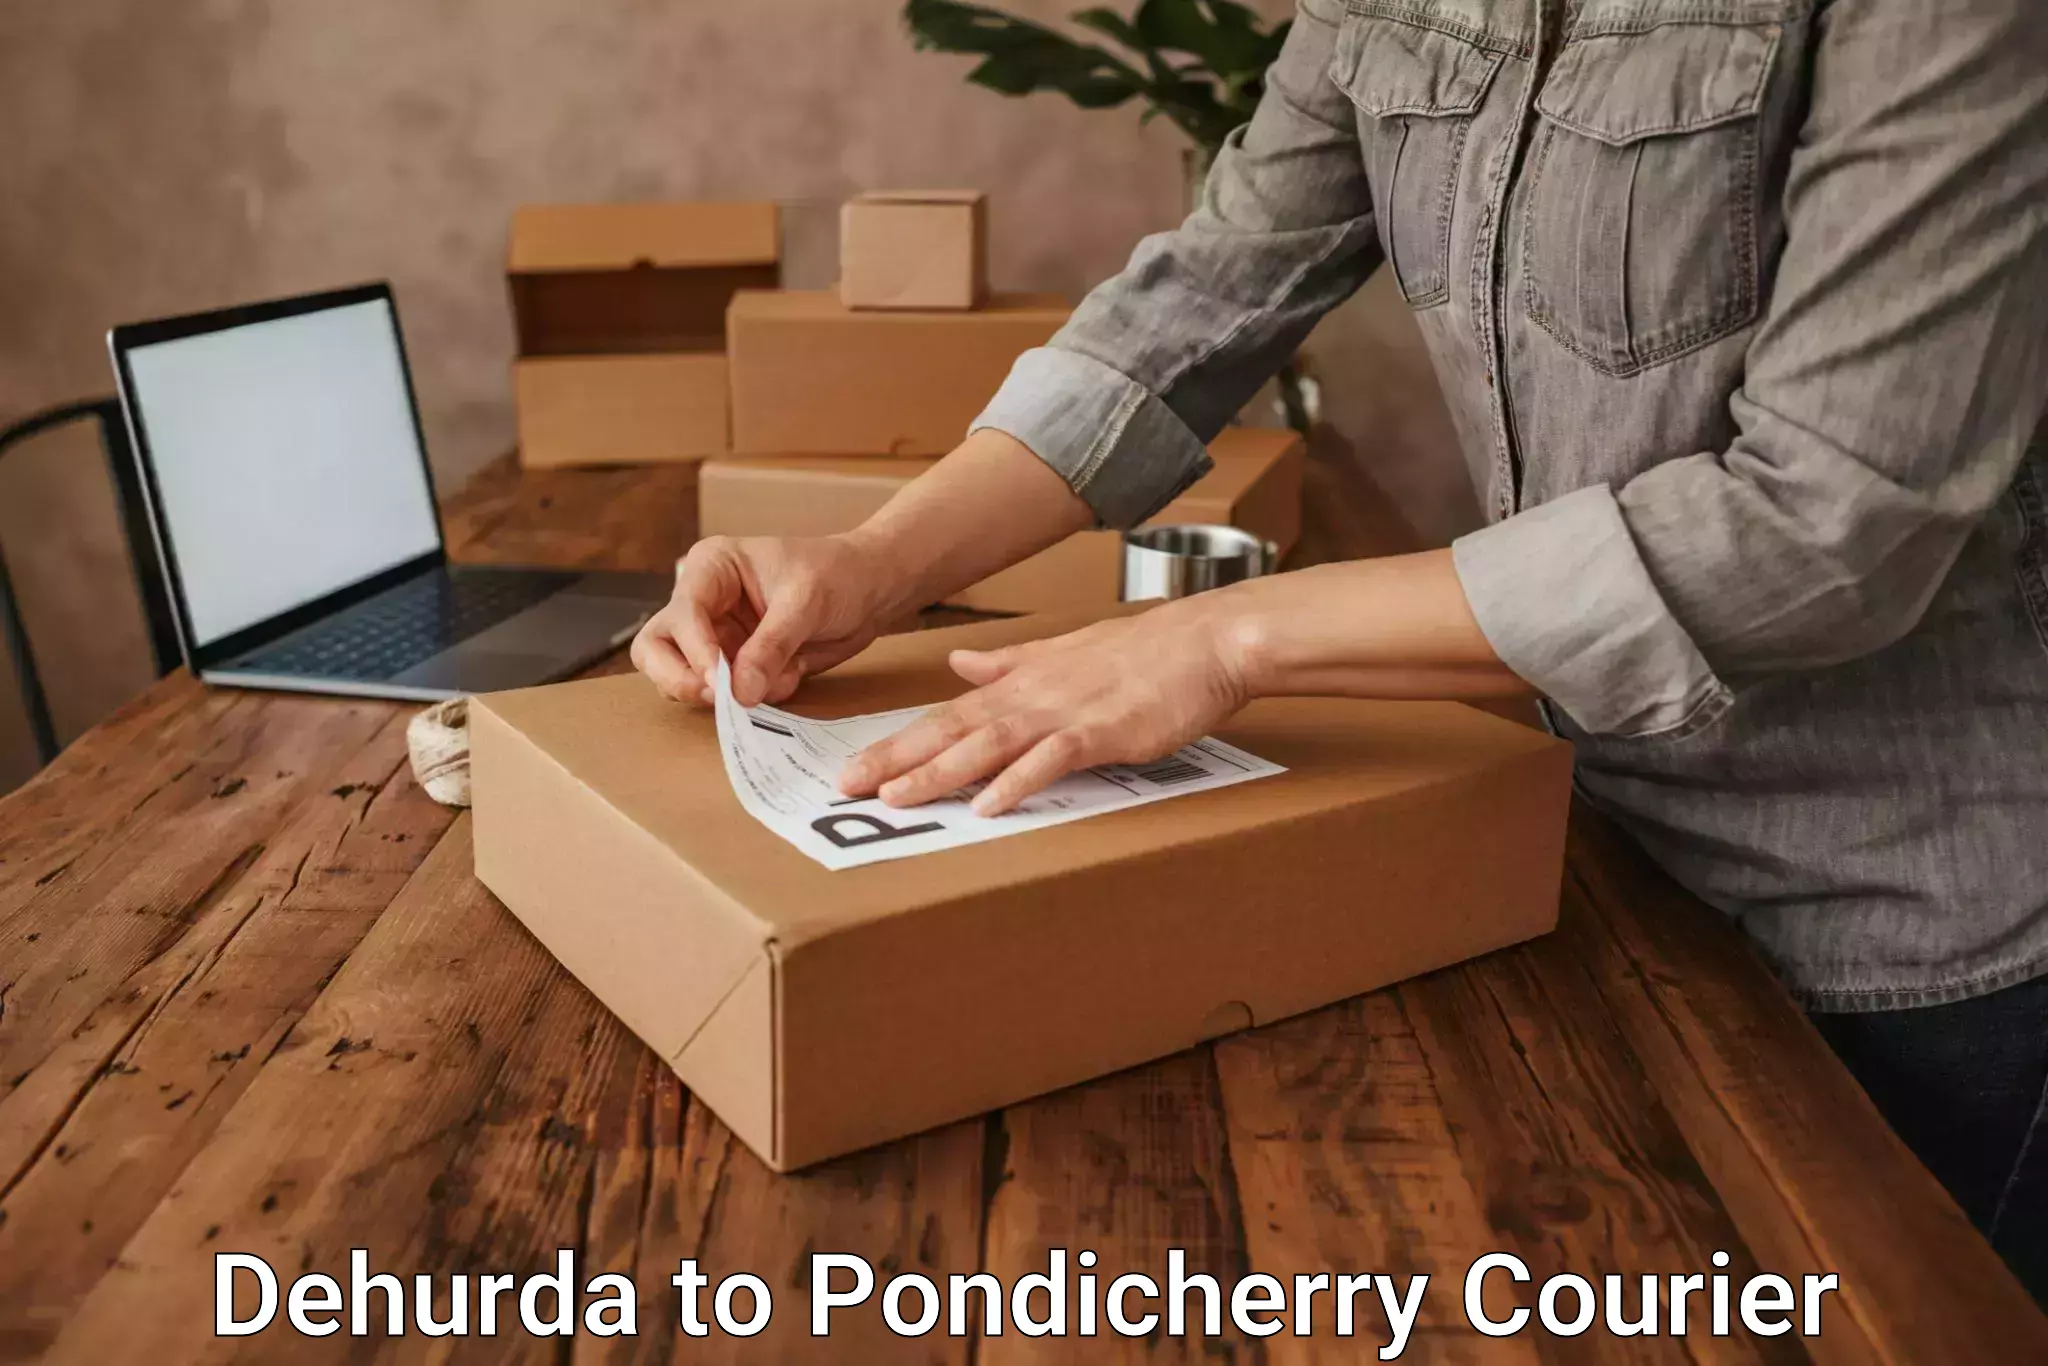 Emergency parcel delivery in Dehurda to Pondicherry University